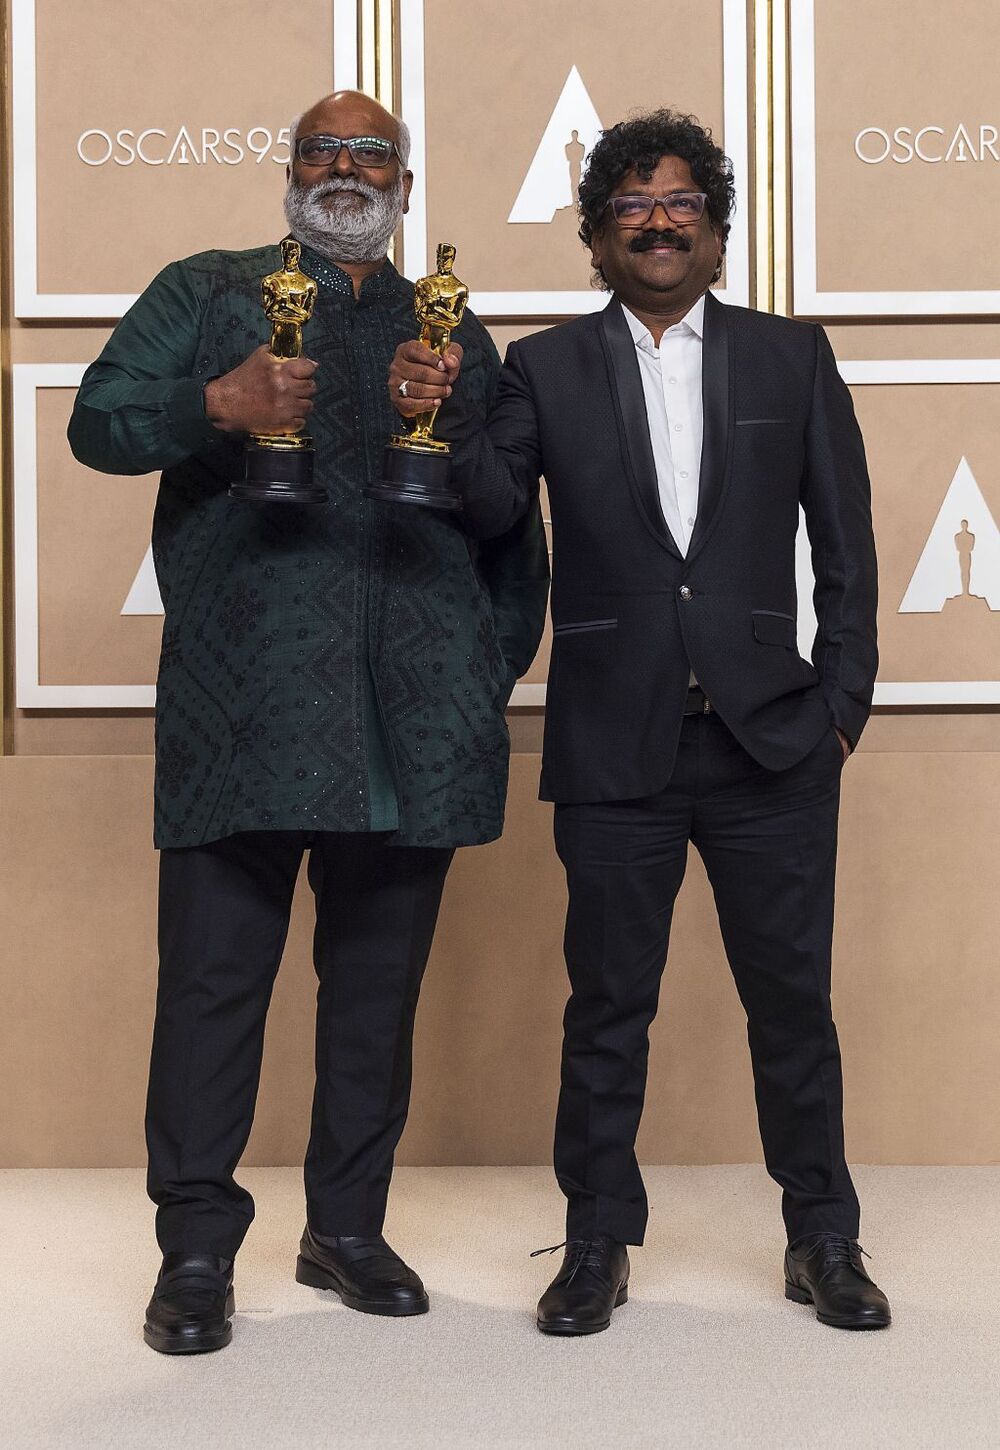 M. M. Keeravani y Chandrabose posan con sus premios óscar a Mejor Canción Original 